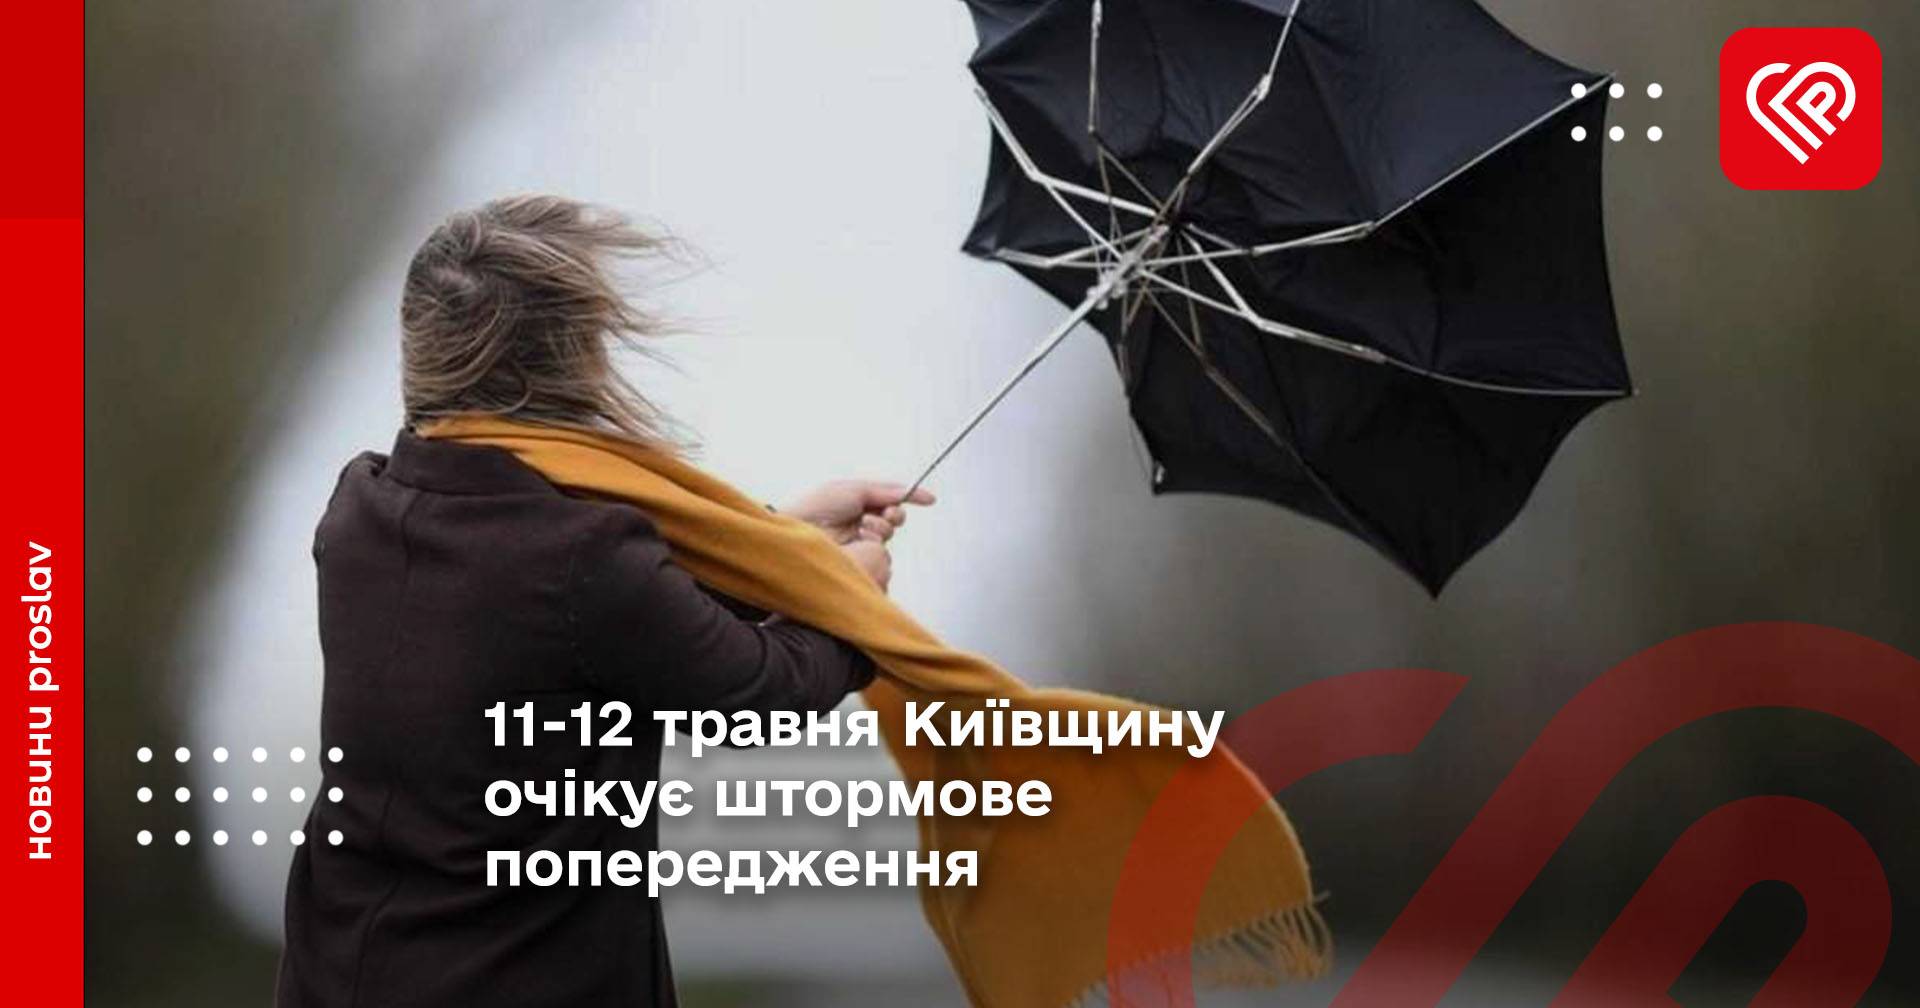 11-12 травня Київщину очікує штормове попередження